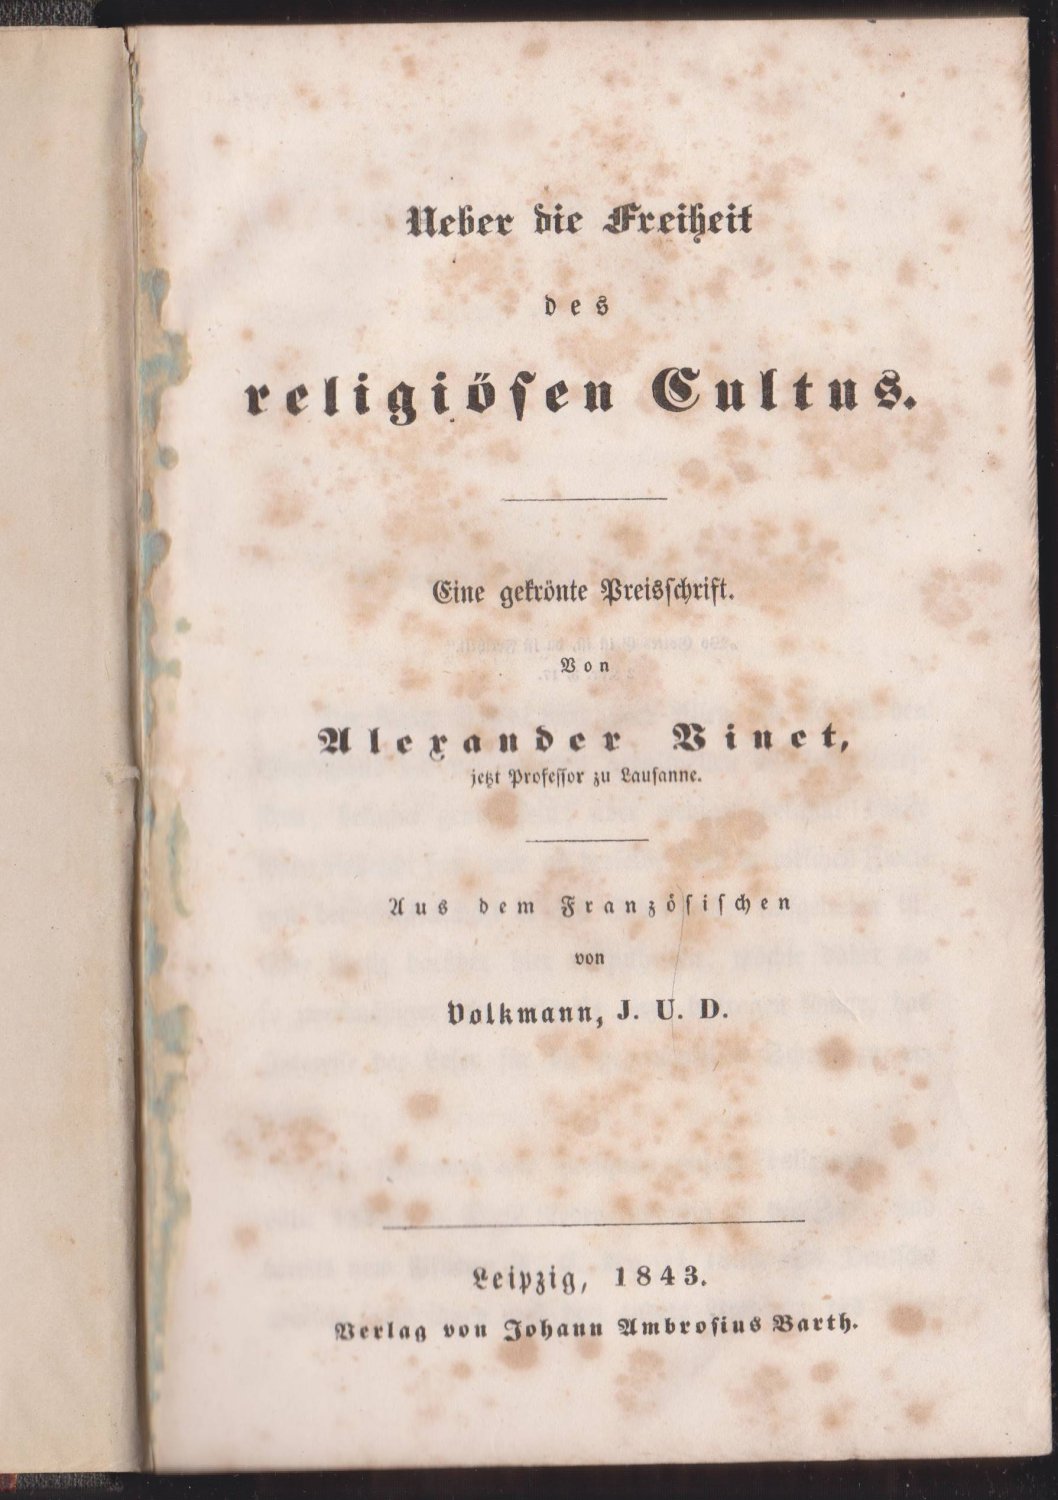 VINET, Alexander:  Ueber die Freiheit des religiösen Cultus. (Deutsche Erstausgabe!). Eine gekrönte Preisschrift. 